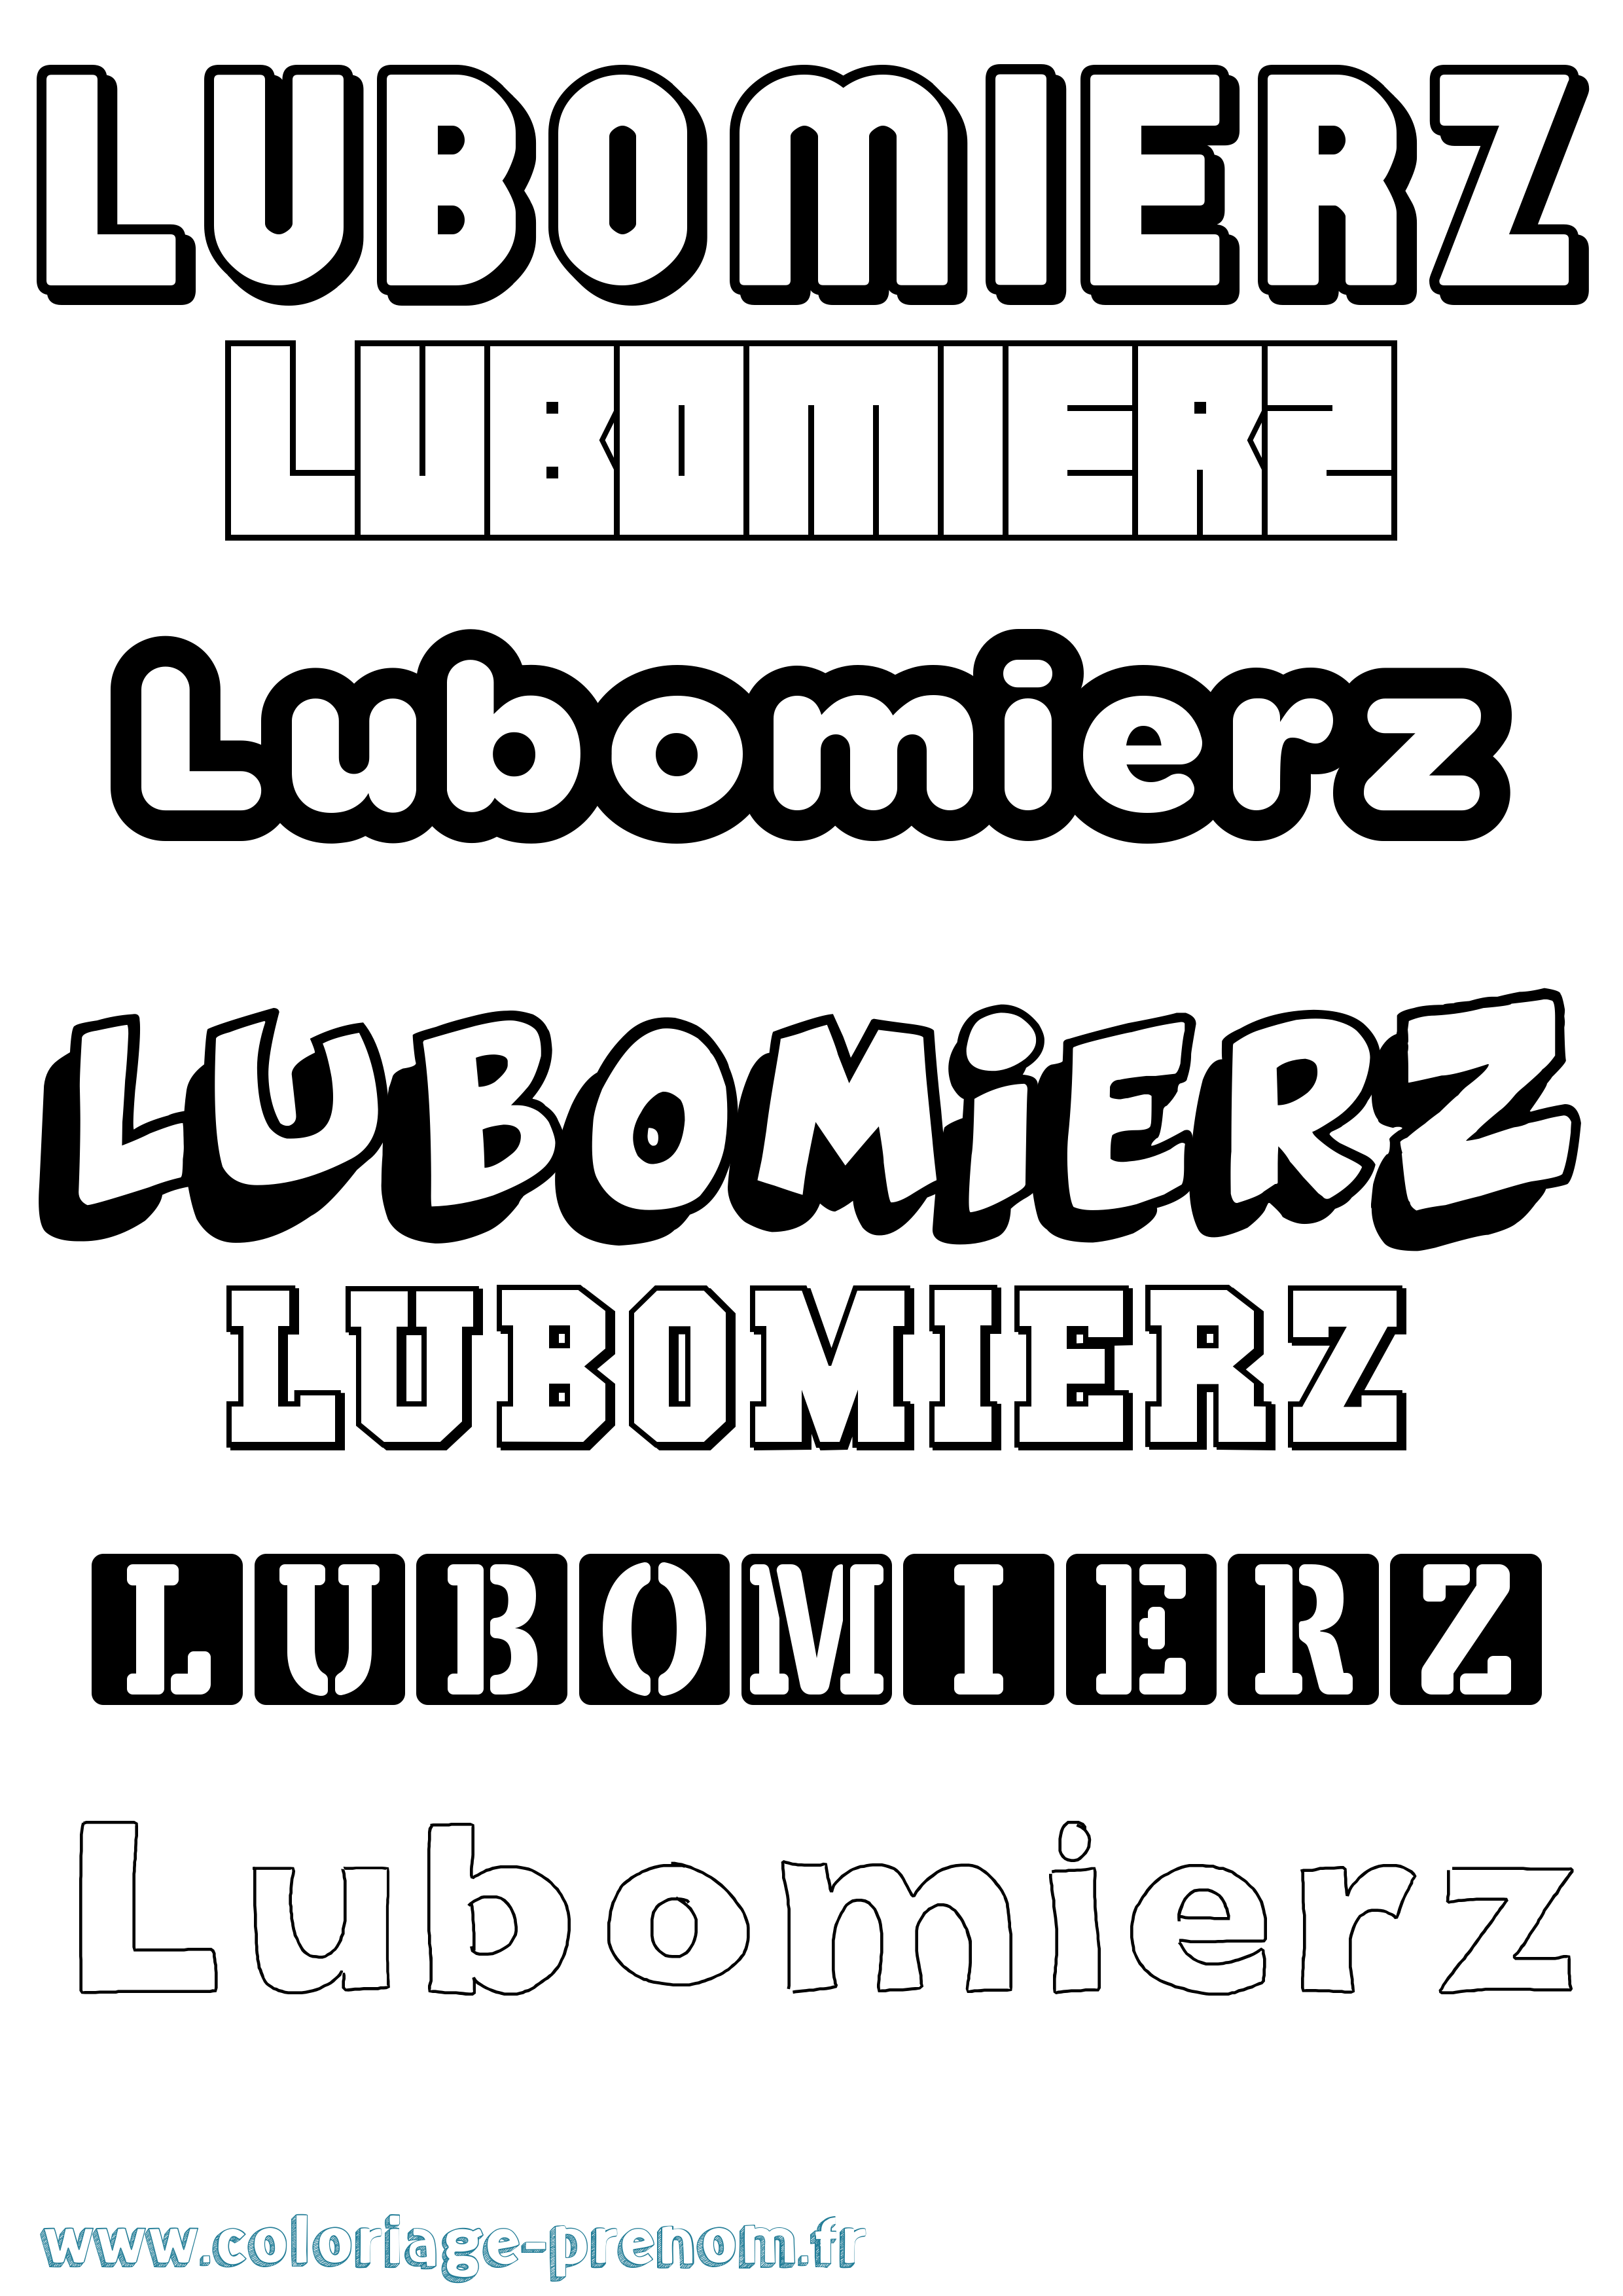 Coloriage prénom Lubomierz Simple